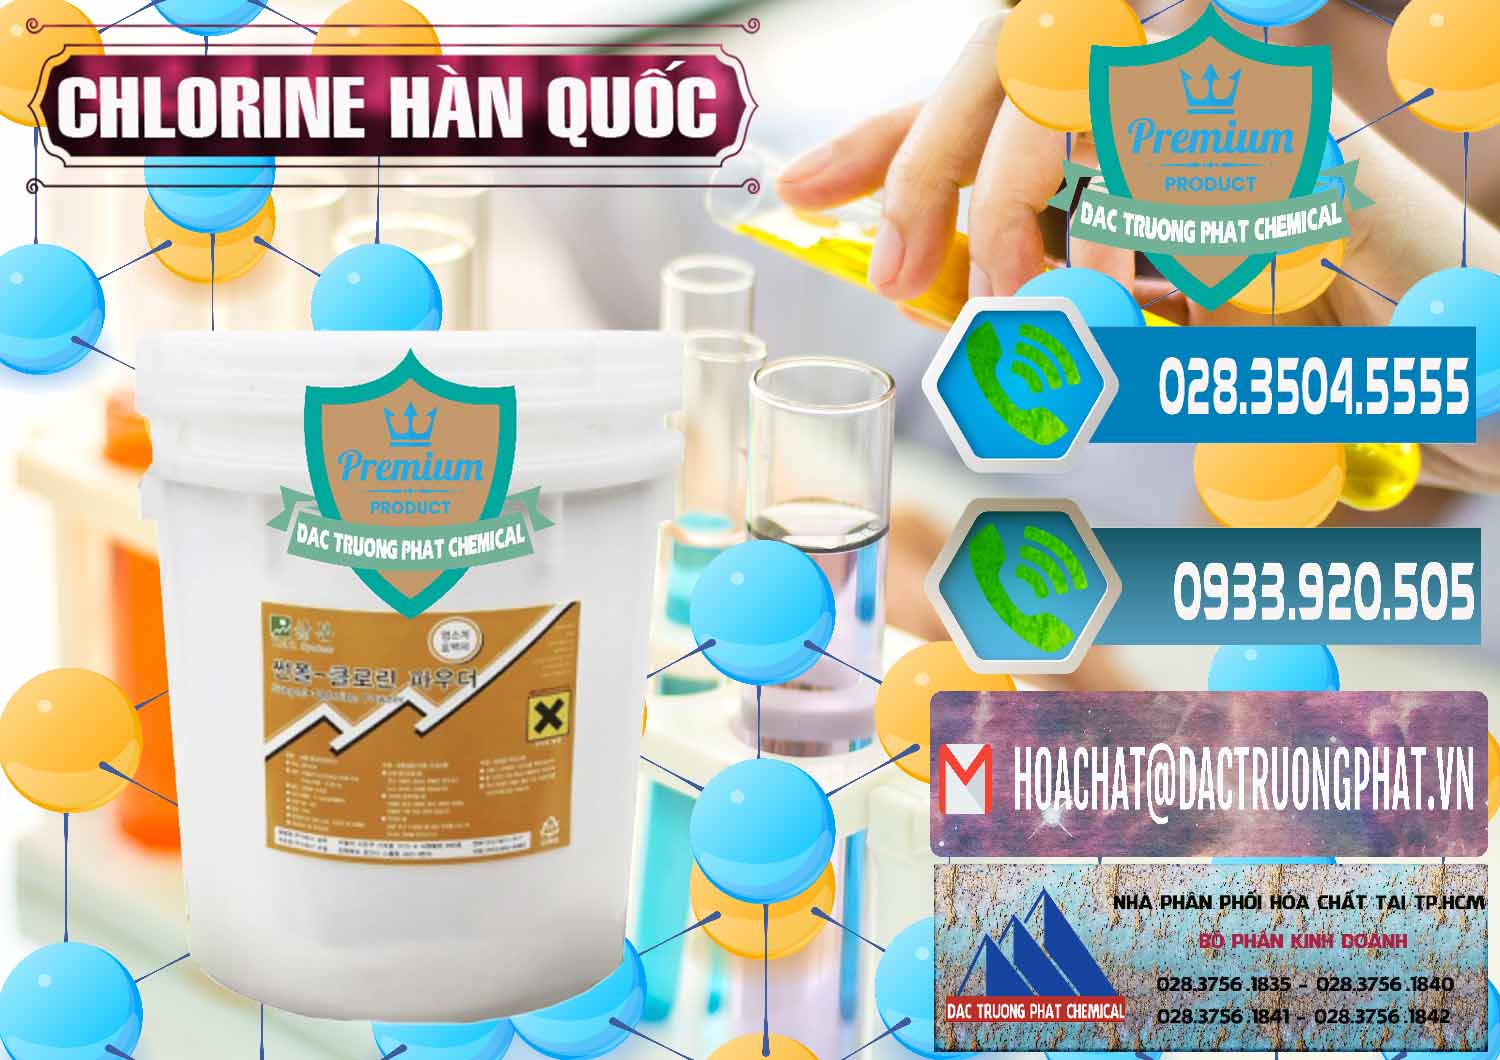 Chuyên bán và phân phối Chlorine – Clorin 70% Hàn Quốc Korea - 0345 - Cty chuyên nhập khẩu & cung cấp hóa chất tại TP.HCM - congtyhoachat.net